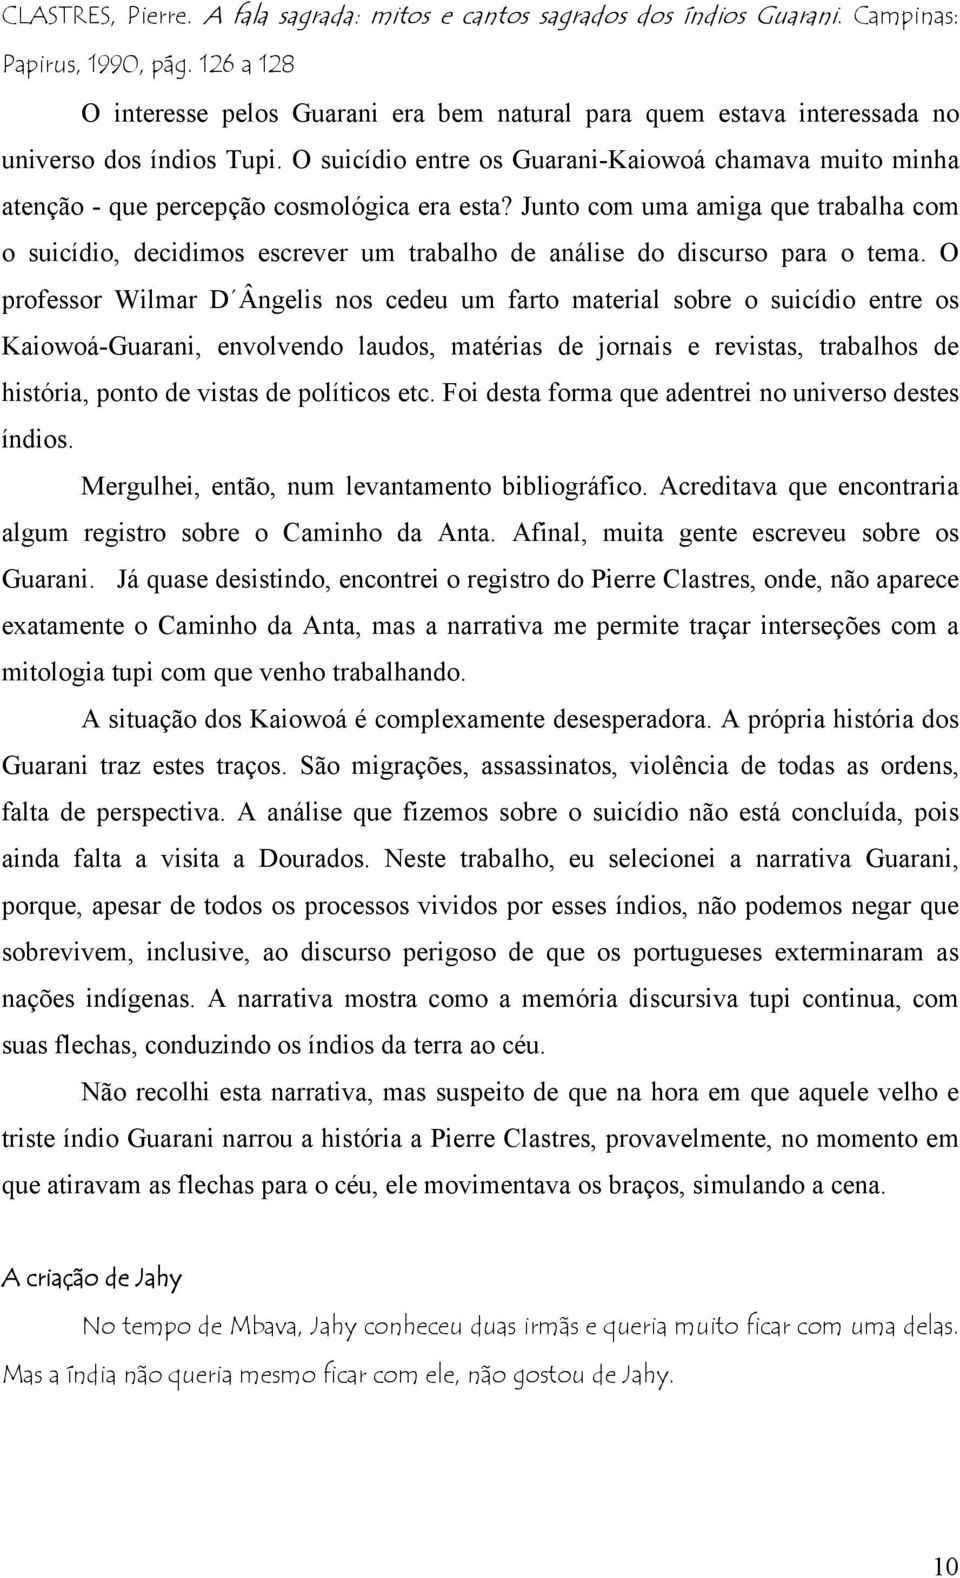 O suicídio entre os Guarani-Kaiowoá chamava muito minha atenção - que percepção cosmológica era esta?